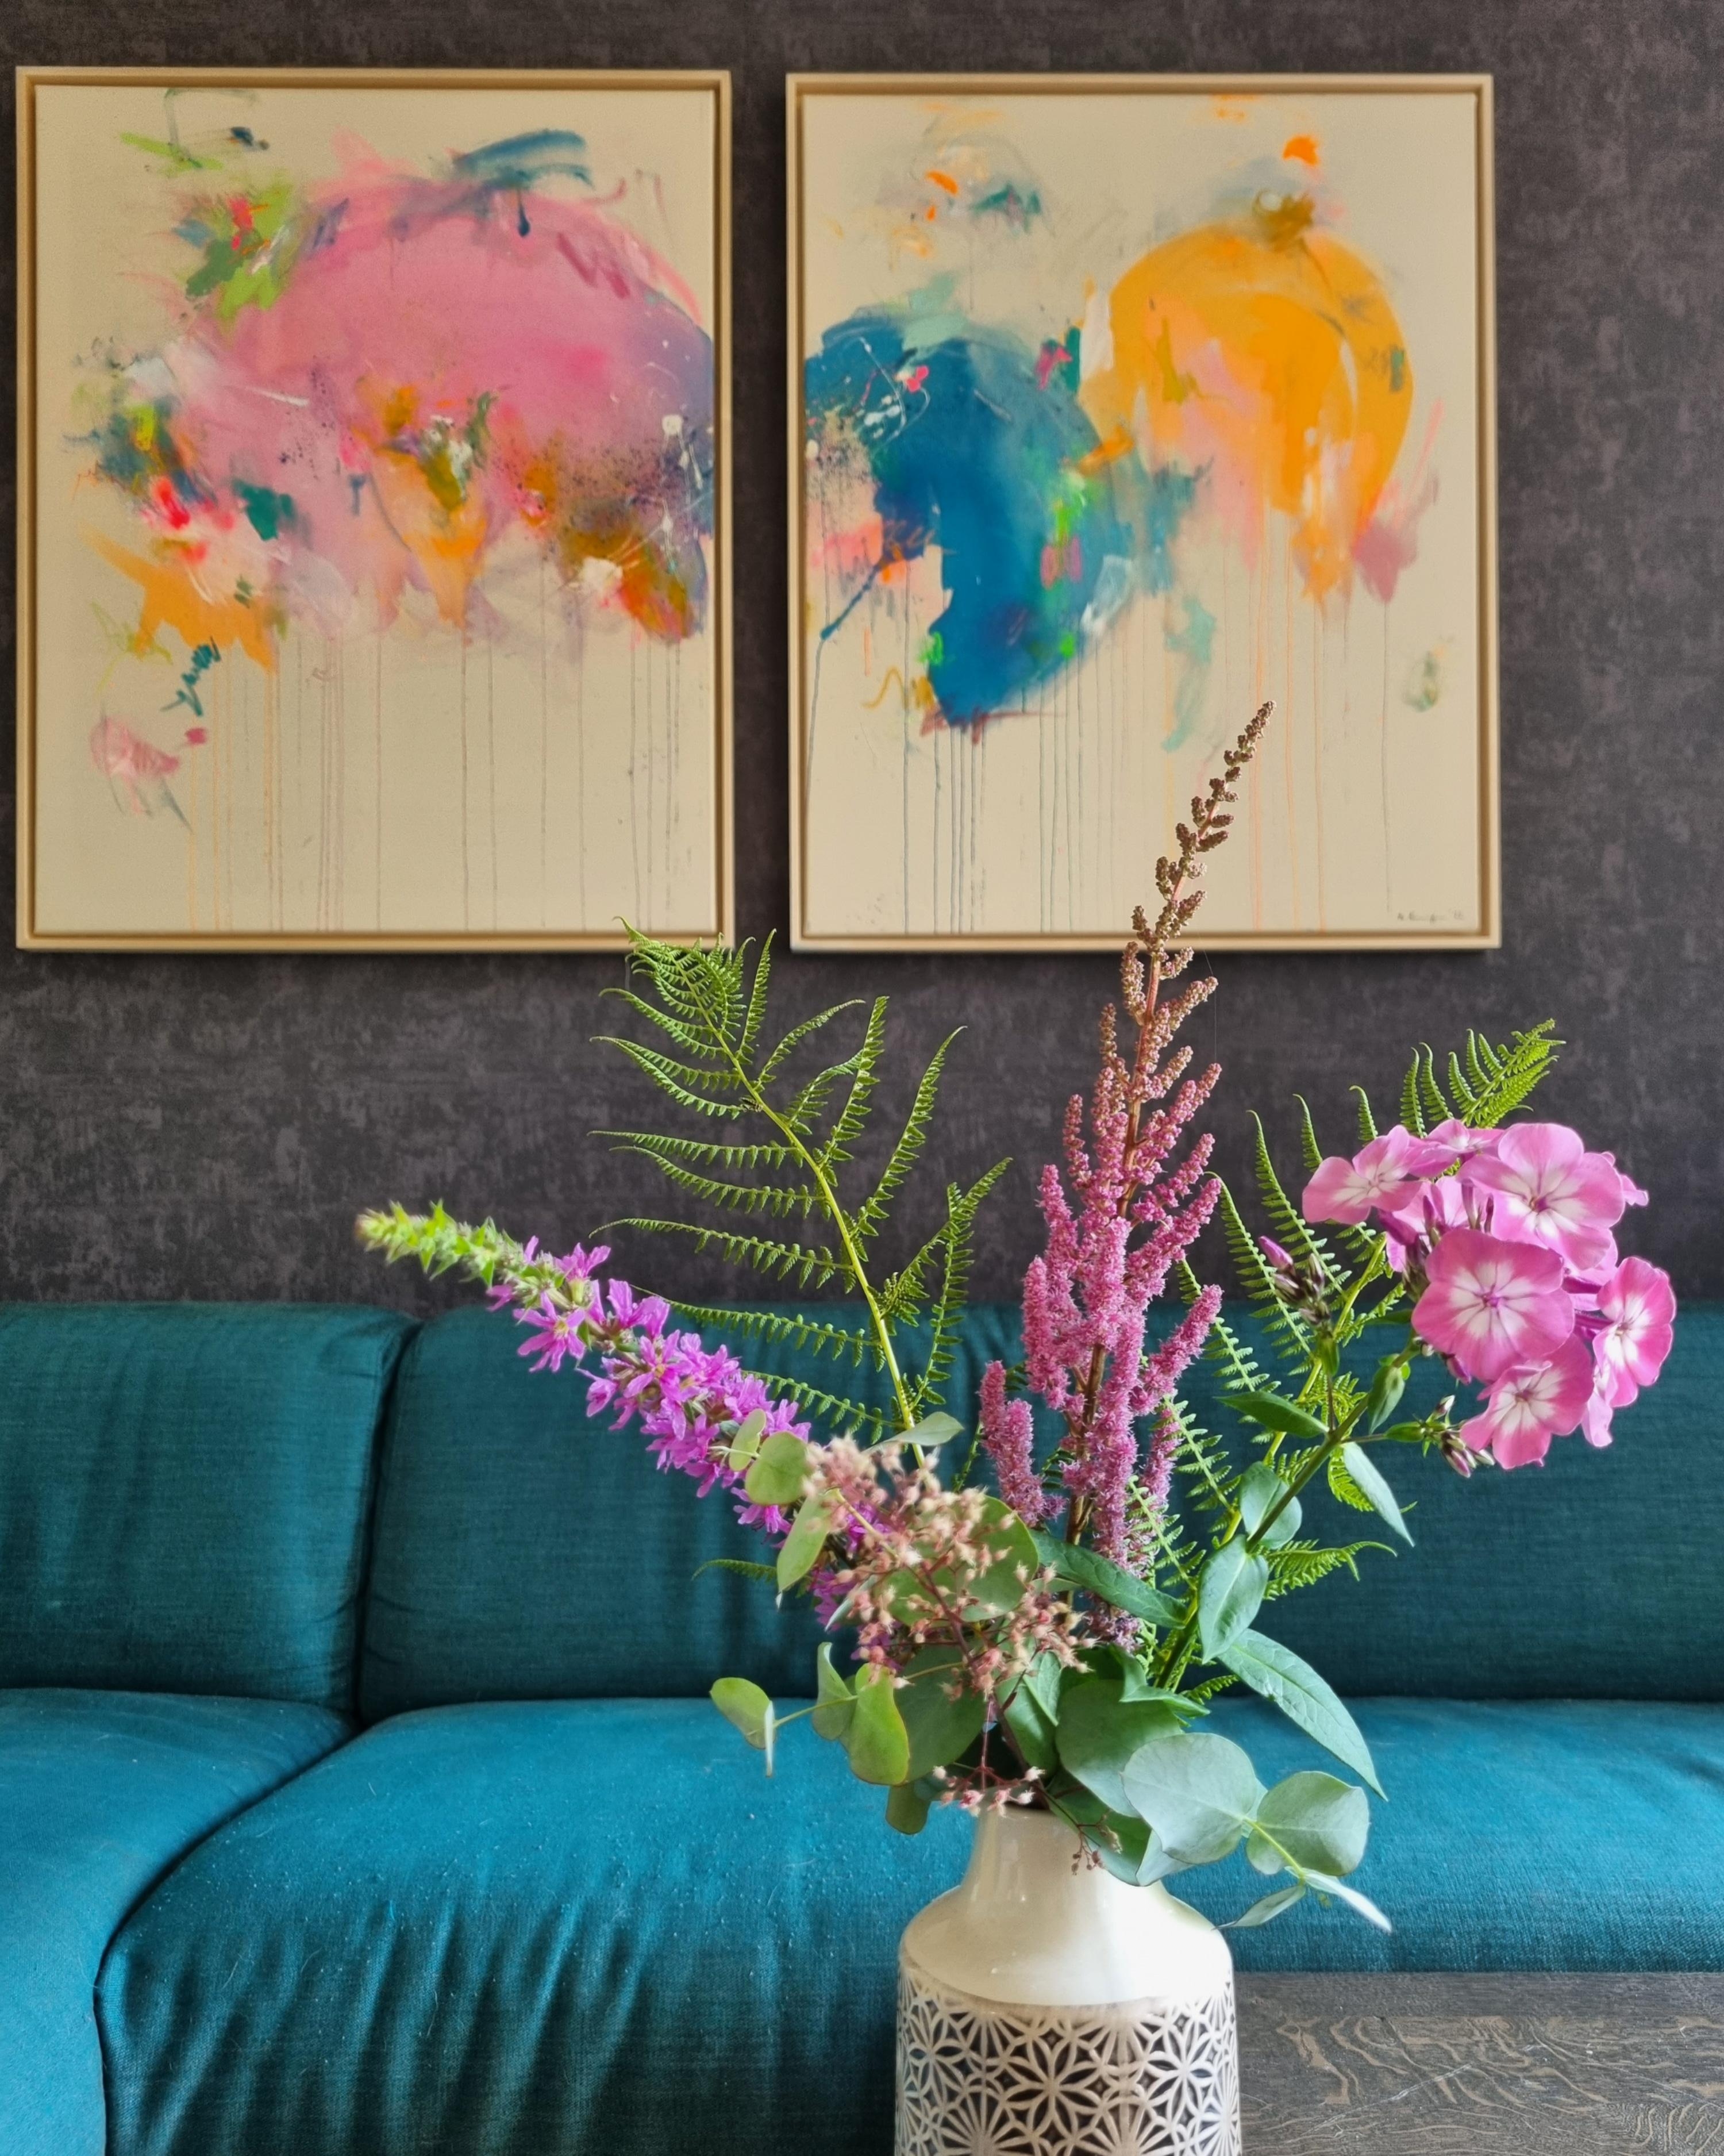 Kunterbuntes Wohnzimmer

#Kunst #Blumen #Wohnzimmer #couch